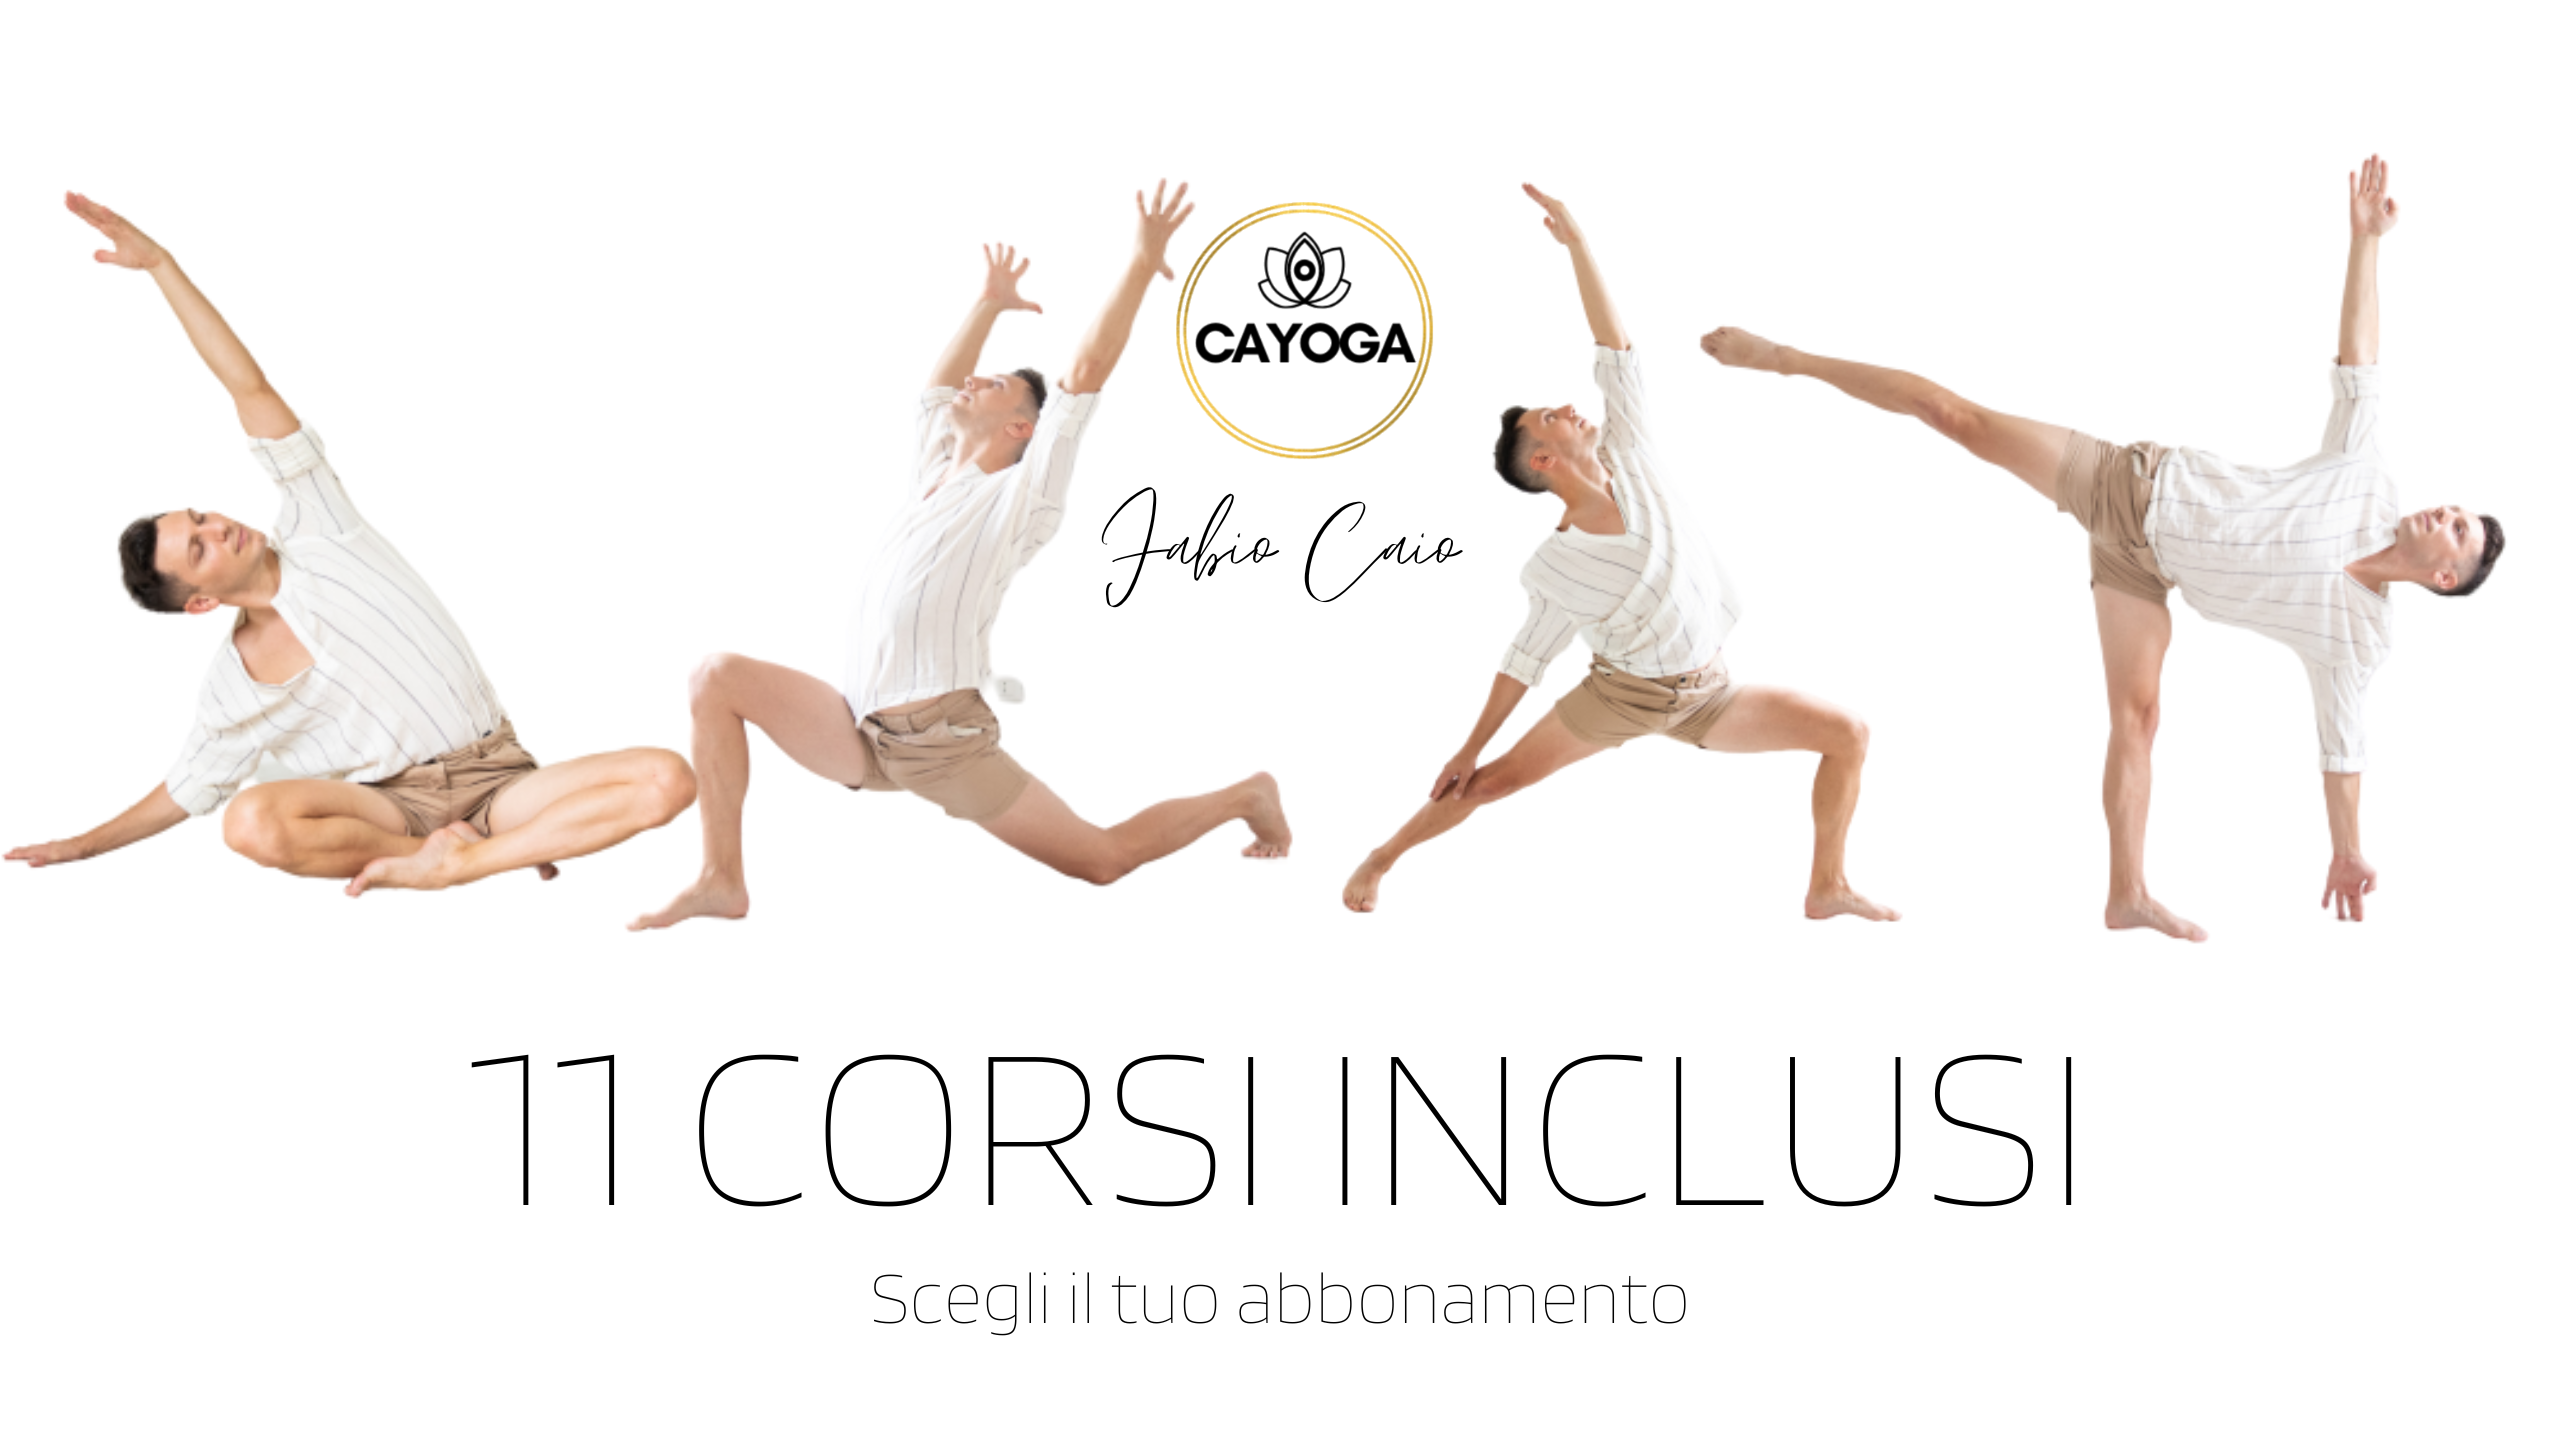 Cayoga scuola di yoga online - Corsi di yoga per principianti